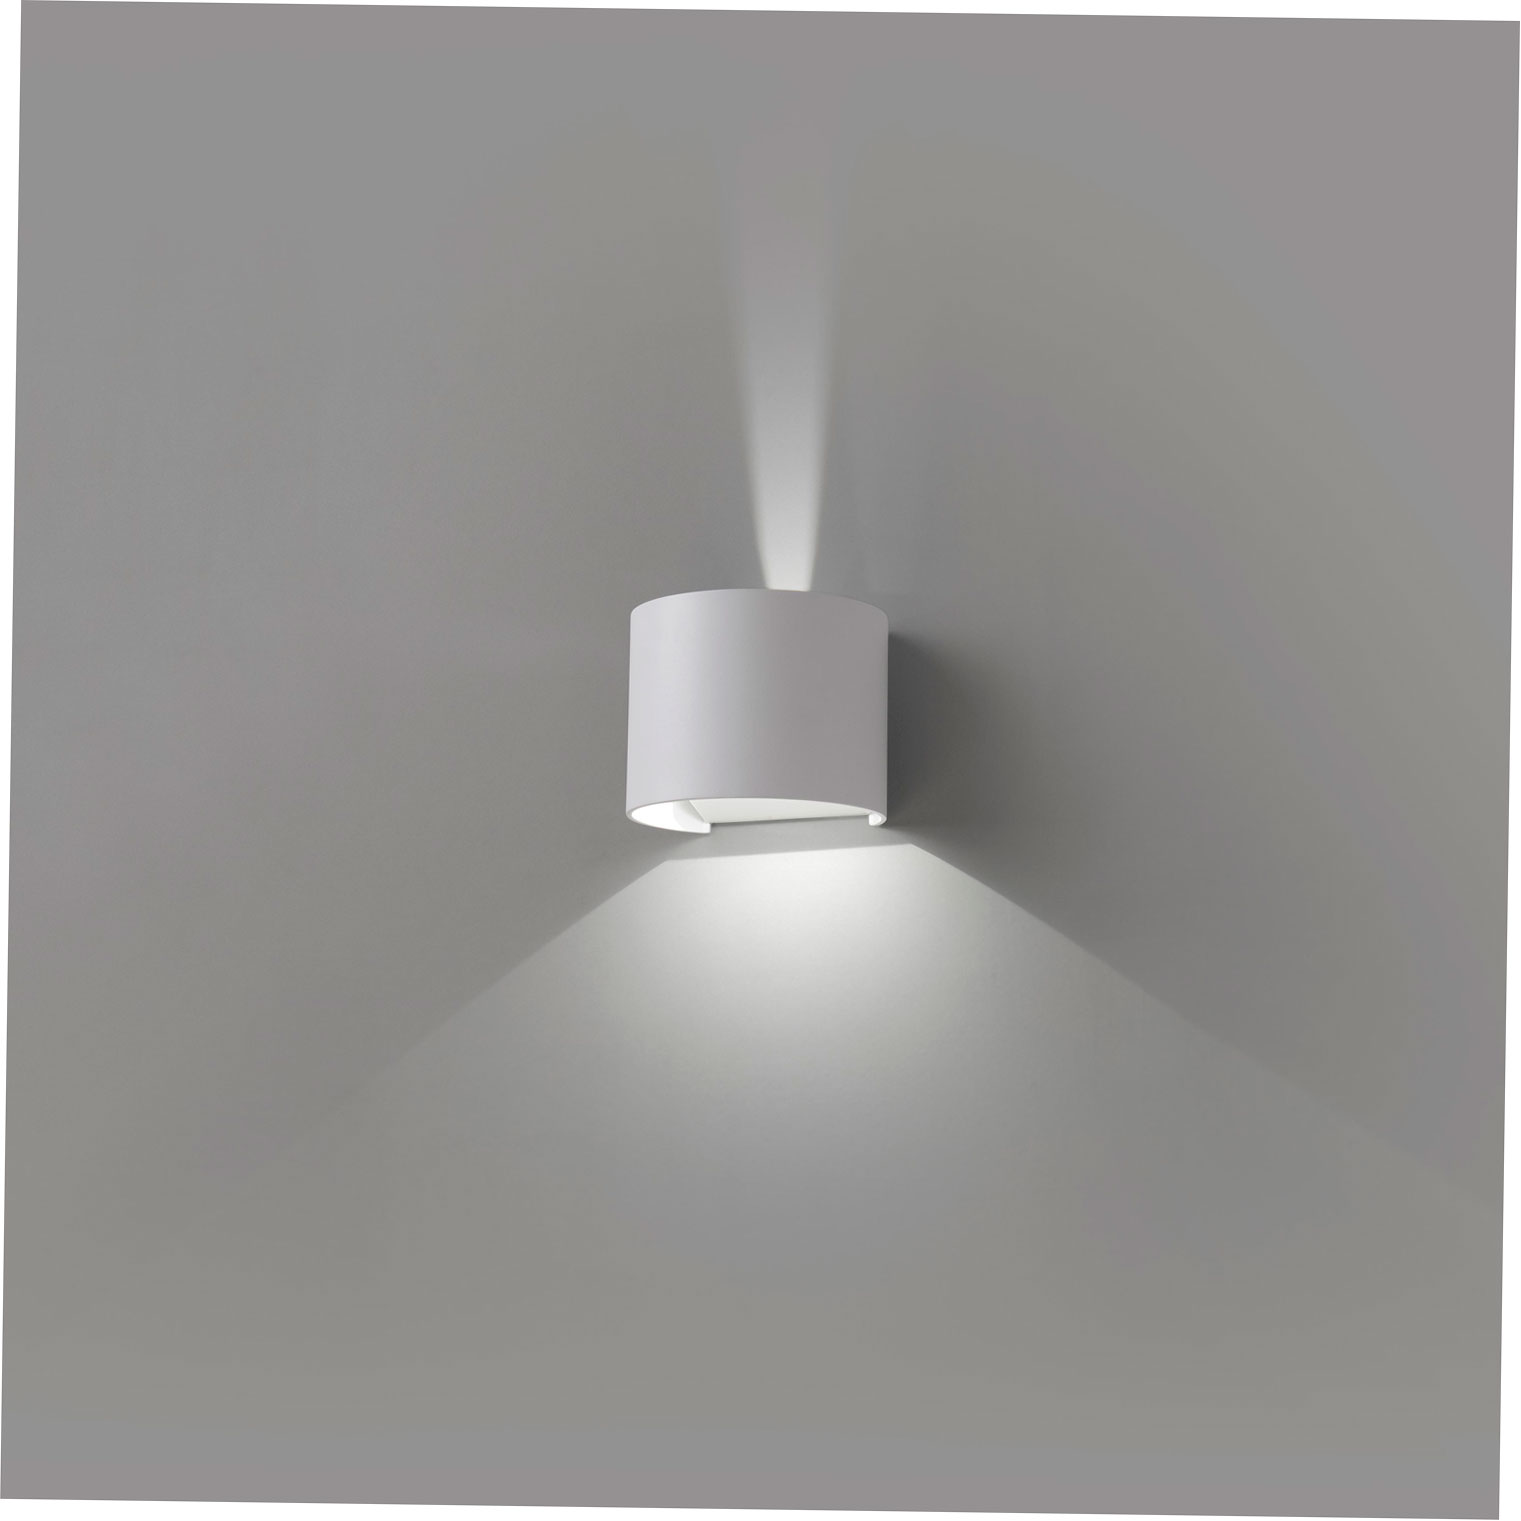 SUNSET WALL LAMP WHITE CREE LED 2x3W 3000K